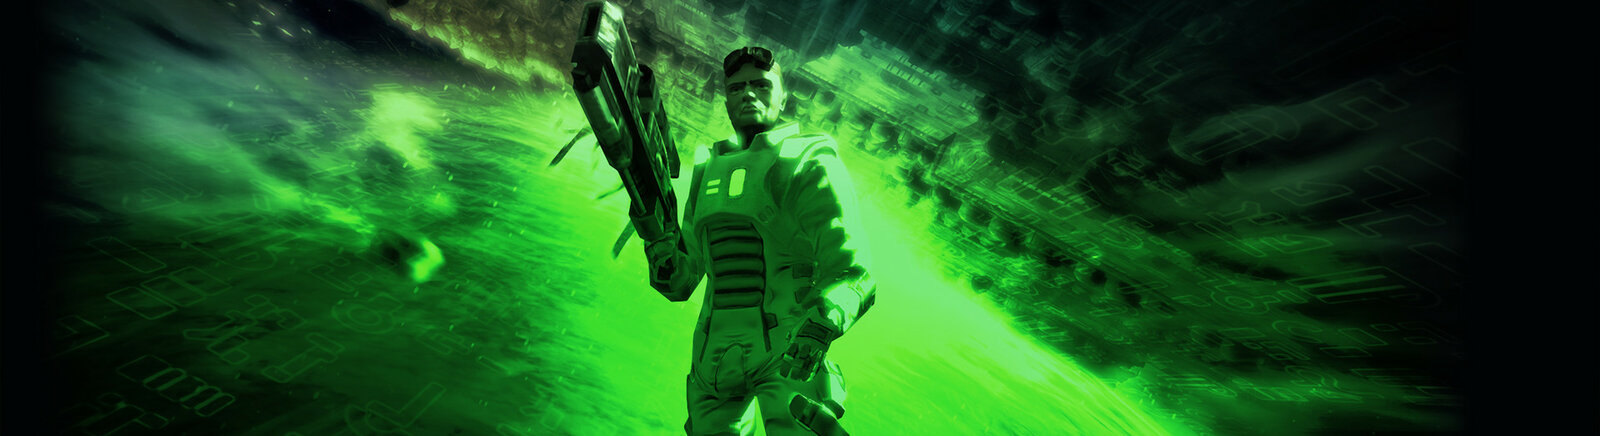 Дата выхода Alien Breed 2: Assault  на PC, PS3 и Xbox 360 в России и во всем мире